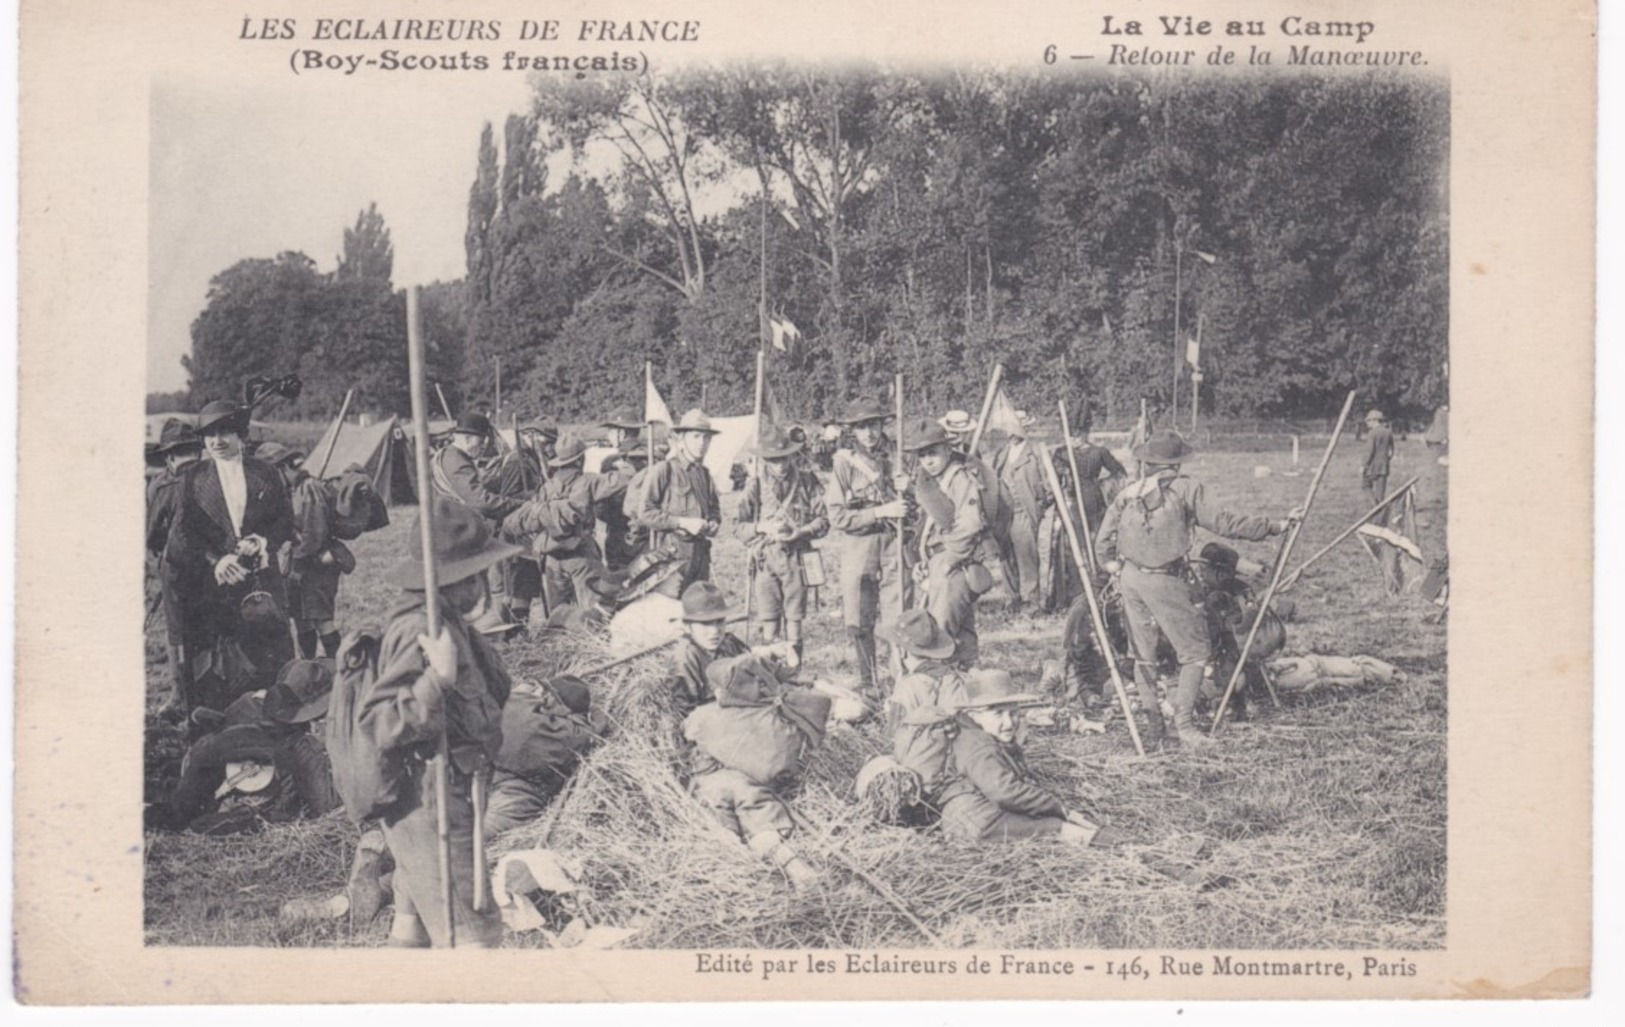 Les Eclaireurs De France - Boy-Scouts Français - La Vie Au Camp - Retour De La Manoeuvre - Ed. Eclaireurs, Paris - Scoutisme